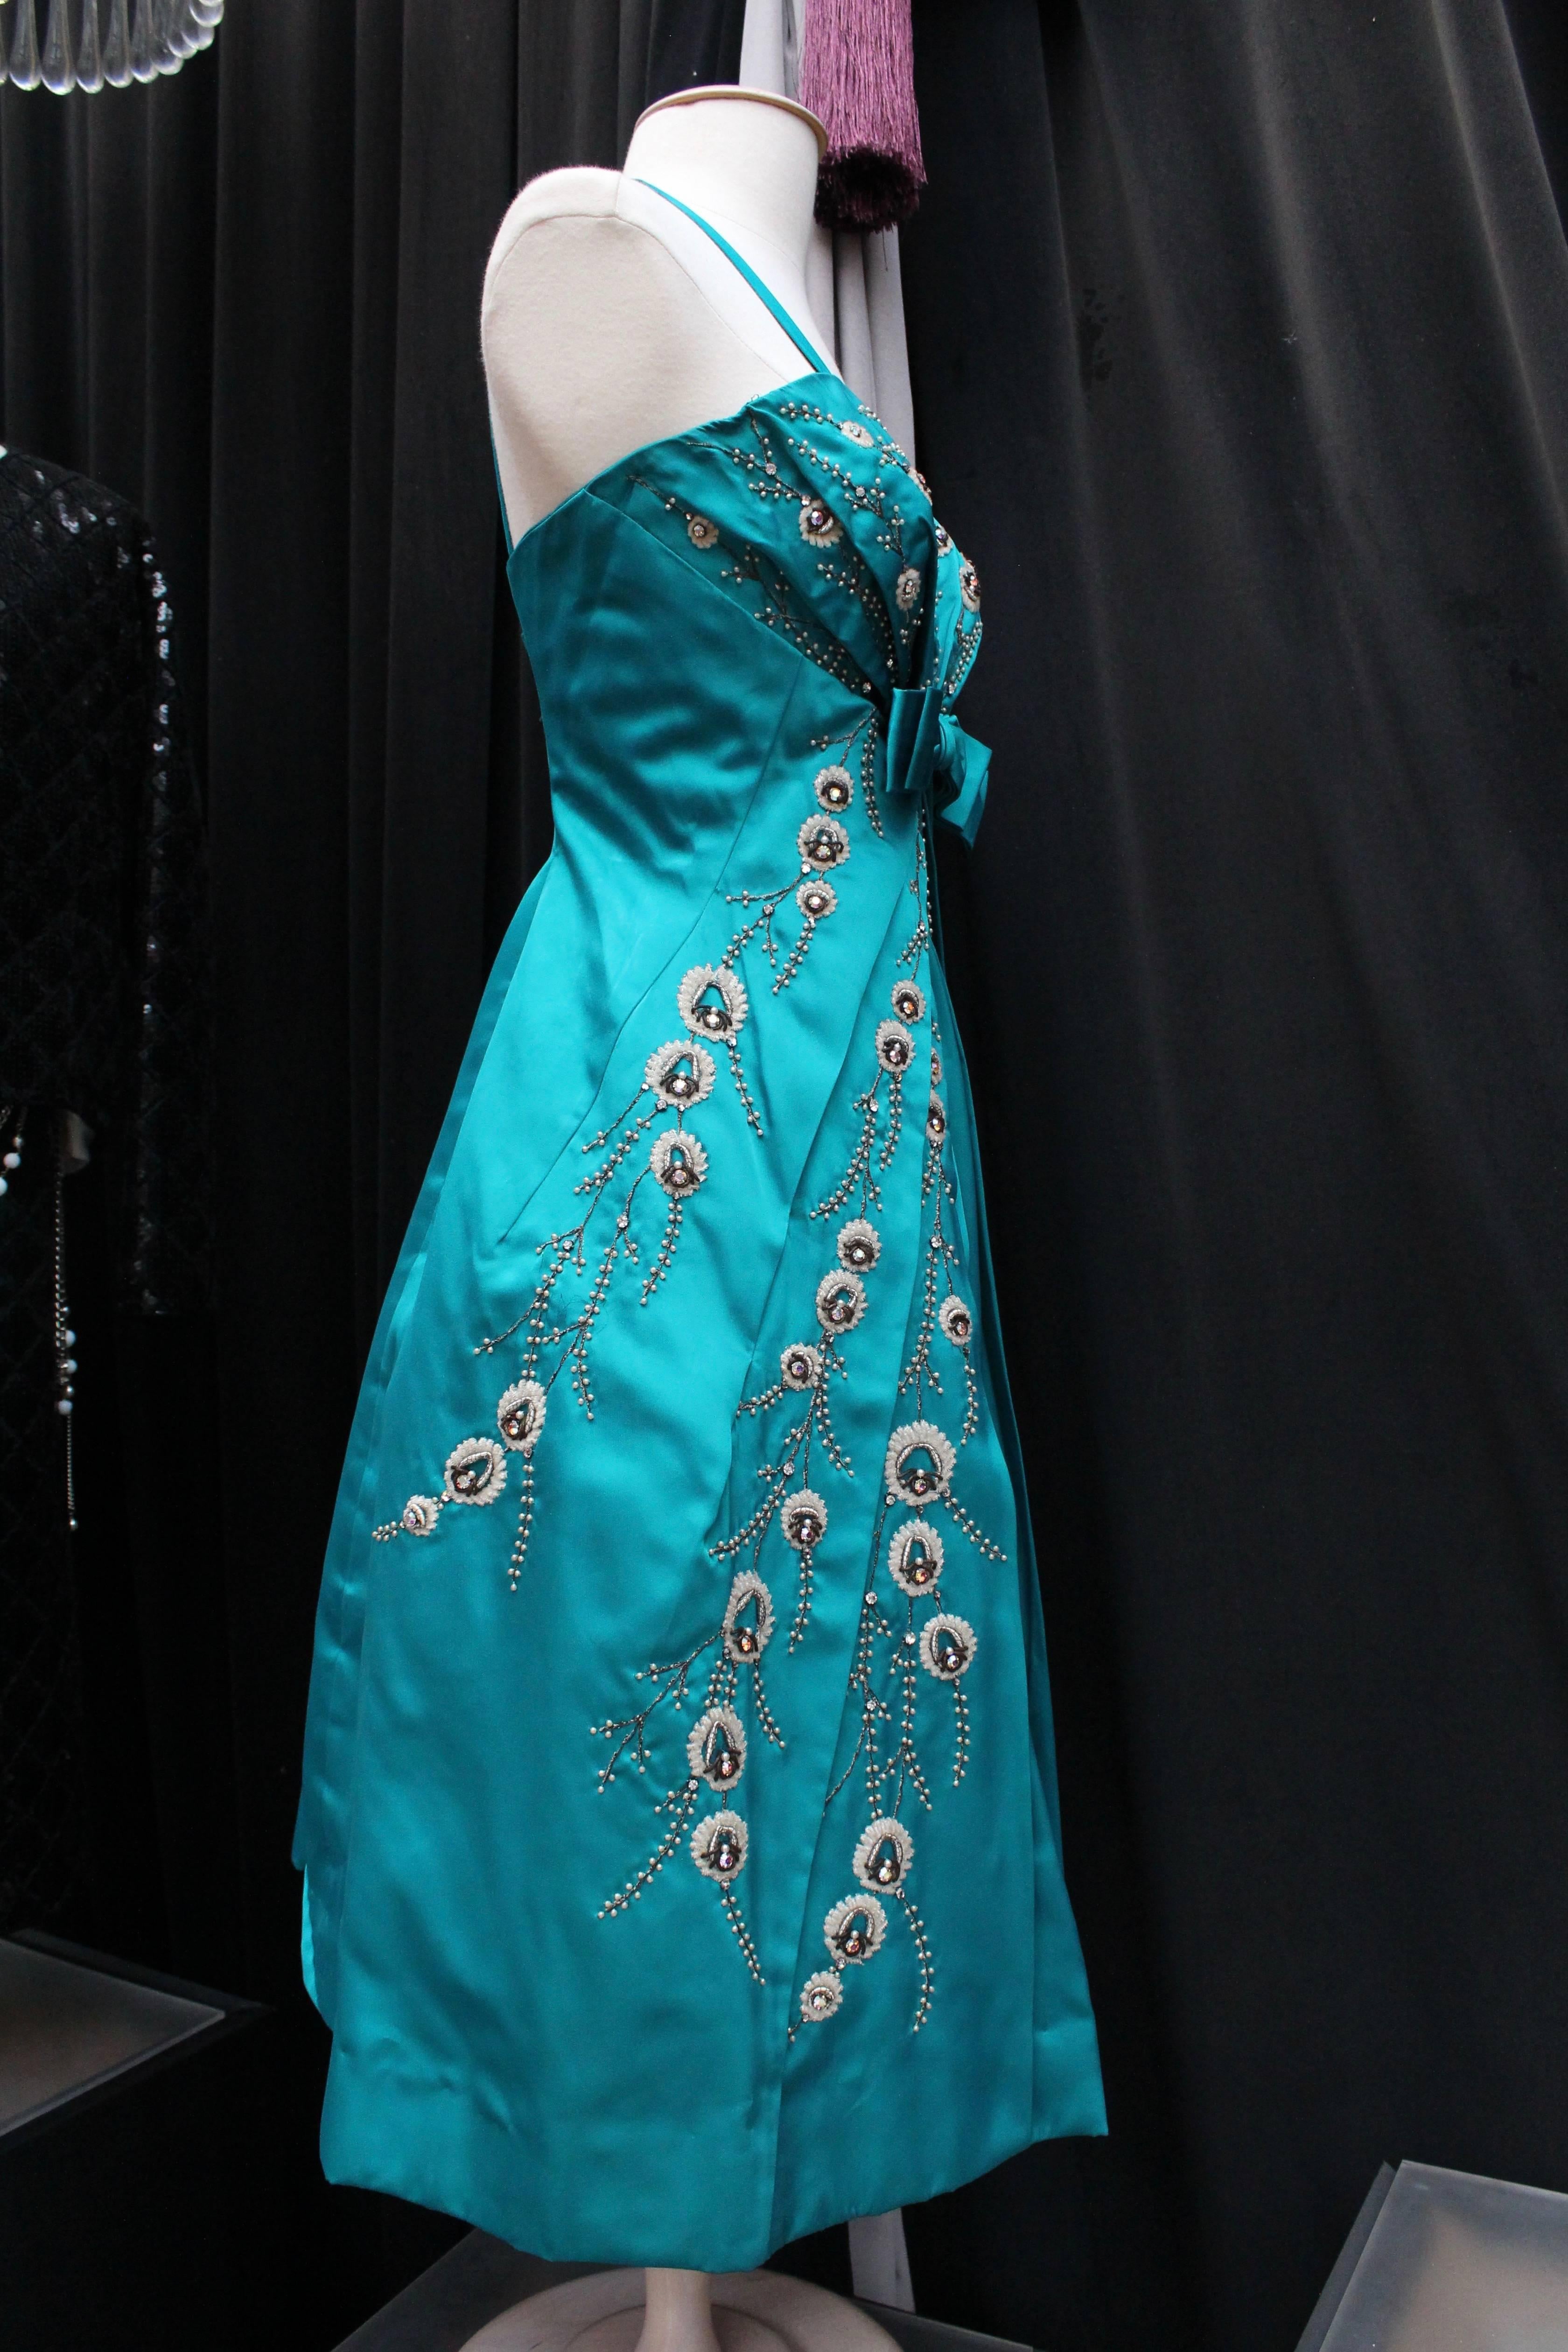 MODISSA - Hübsches türkisfarbenes Cocktailkleid aus Satin in Puffballform. Es ist mit einer breiten Schleife an der Brust und Perlen- und Strassstickereien verziert, die Zweige darstellen. Die zarten Falten verlaufen von der Schleife nach oben zu